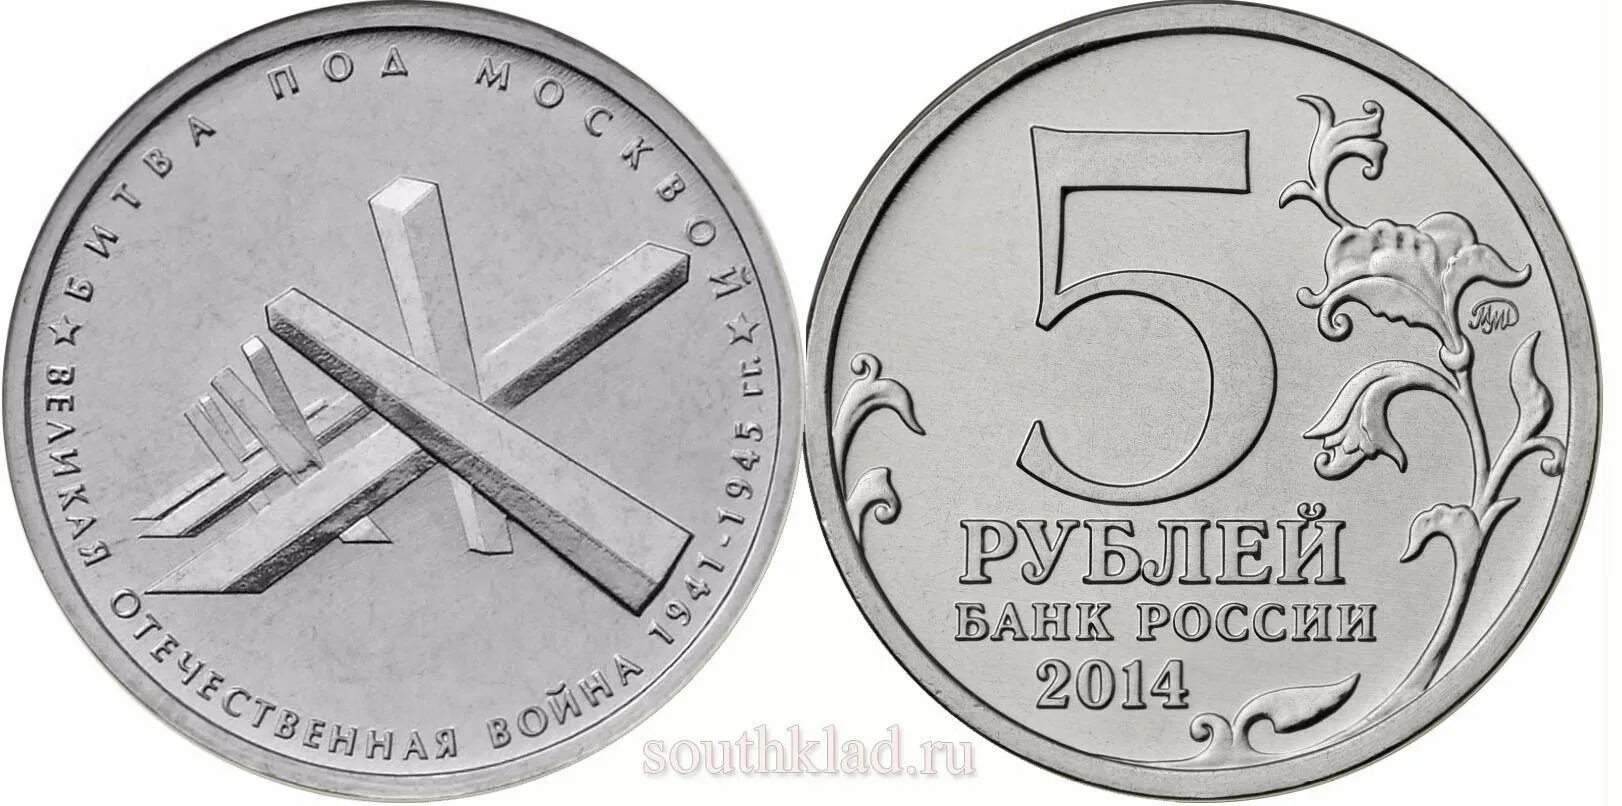 Монета битва под Москвой. 5 Рублей битва под Москвой. 5 Рублей 2014 Великая Отечественная. 48 5 в рублях